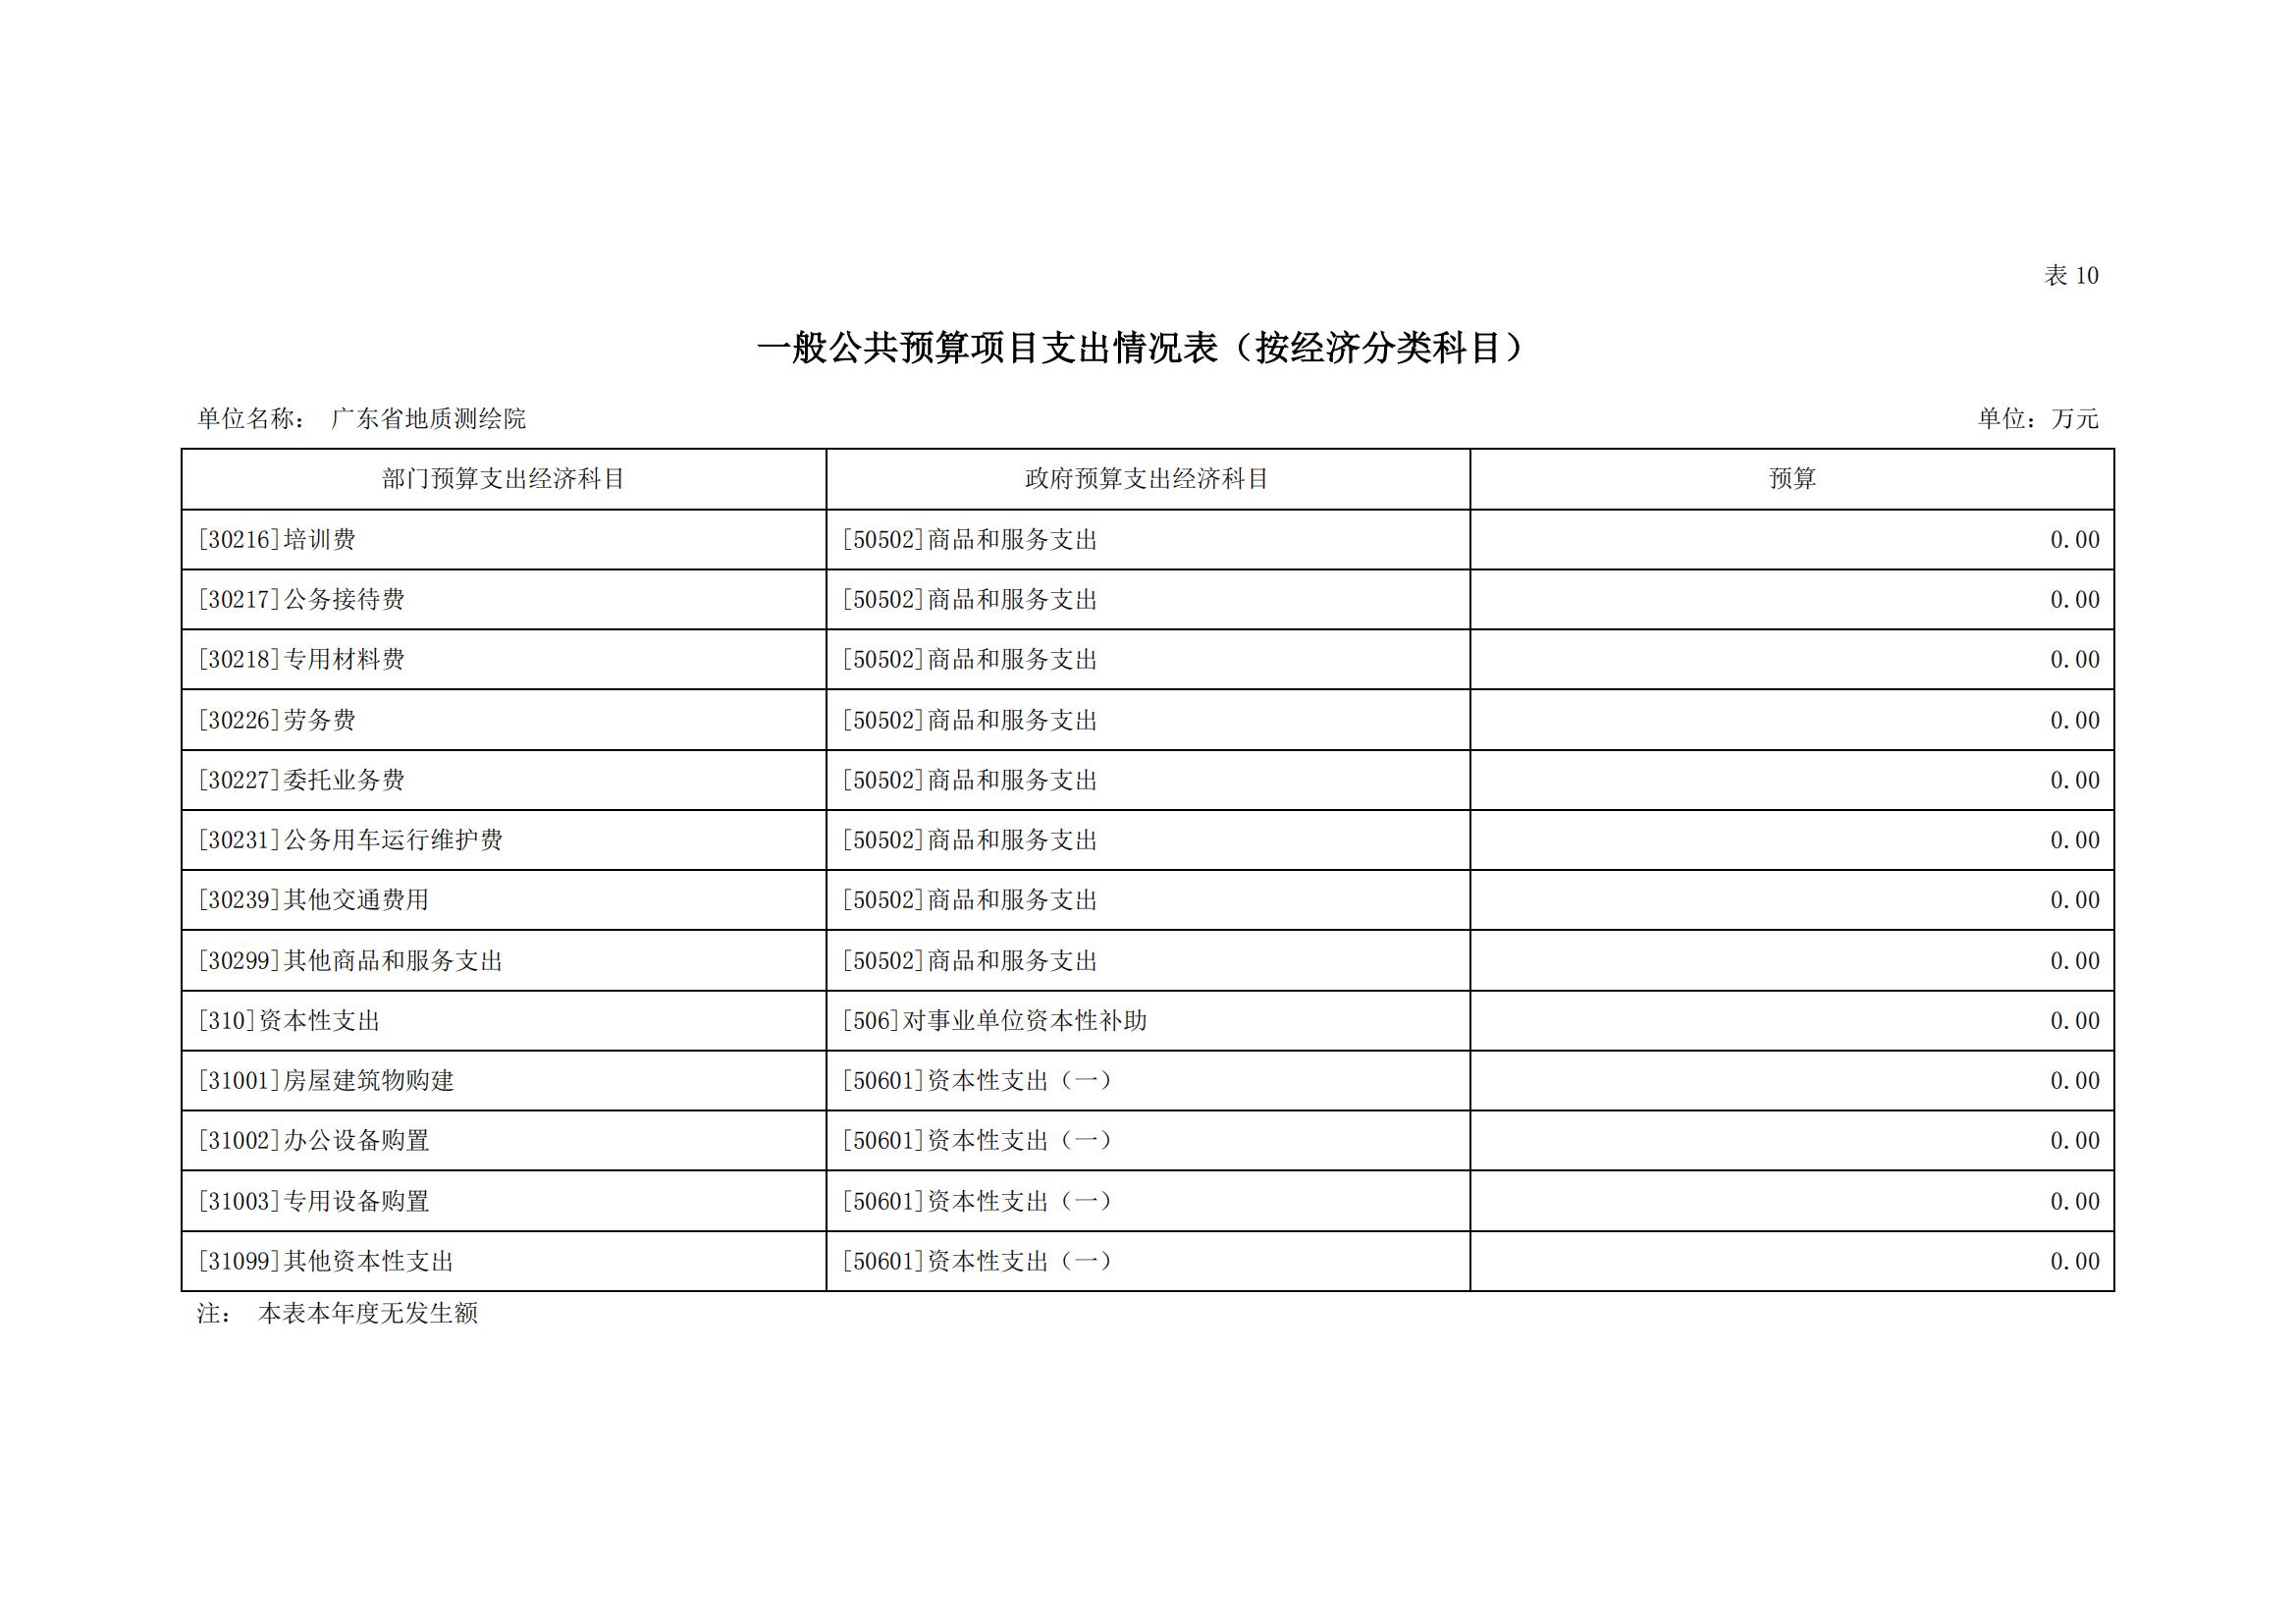 2021年广东省地质测绘院部门预算公开_17.jpg